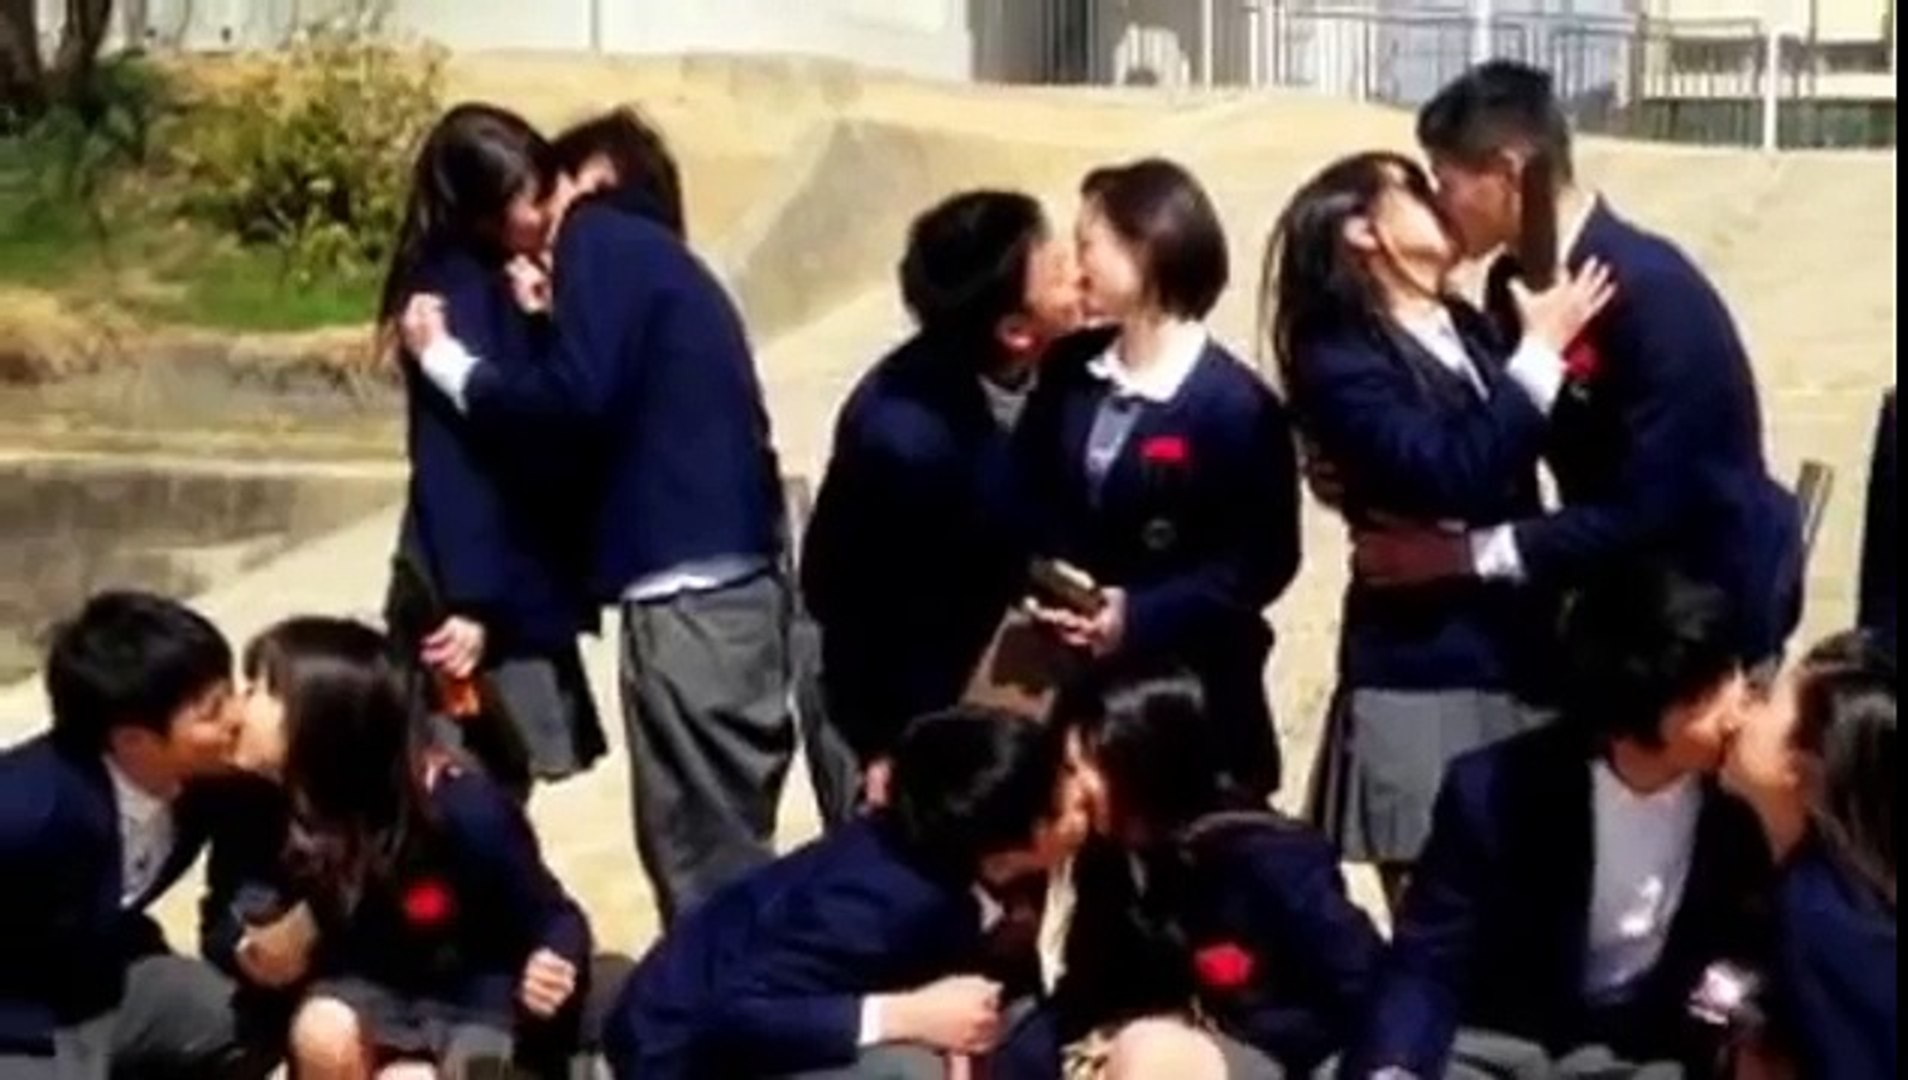 中学生男女8組が制服で集合キス Twitterで写真出回る Video Dailymotion